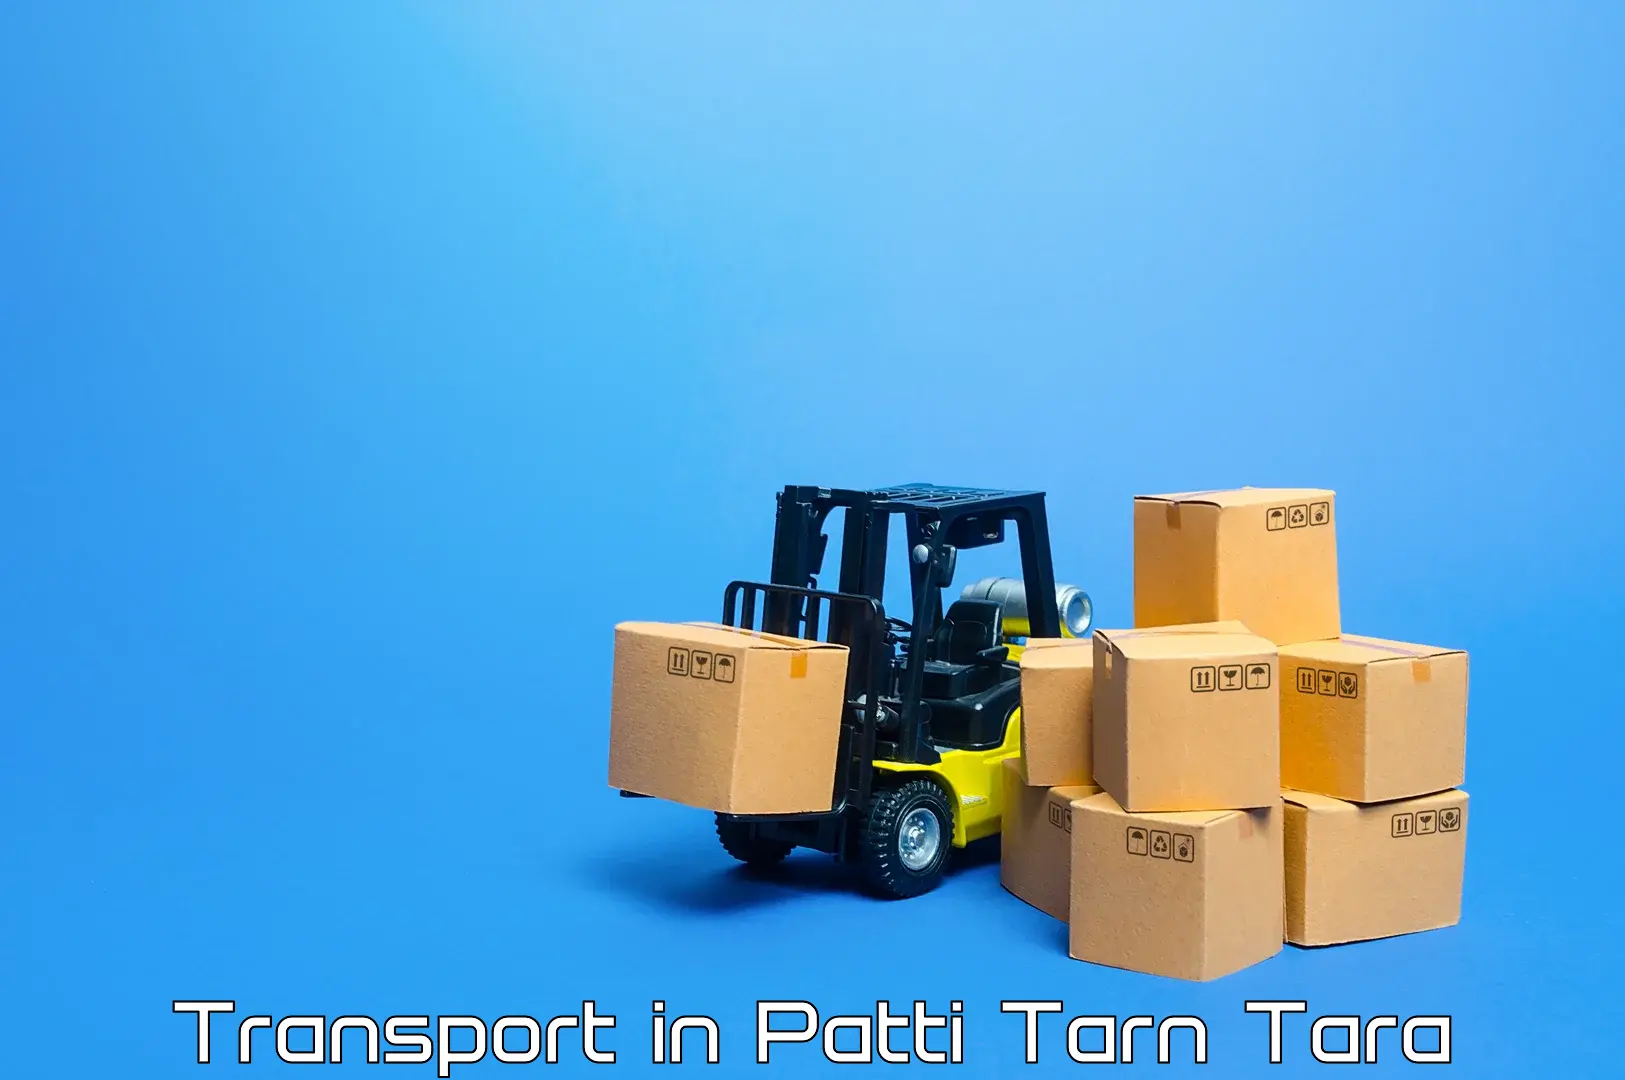 Transportation solution services in Patti Tarn Tara